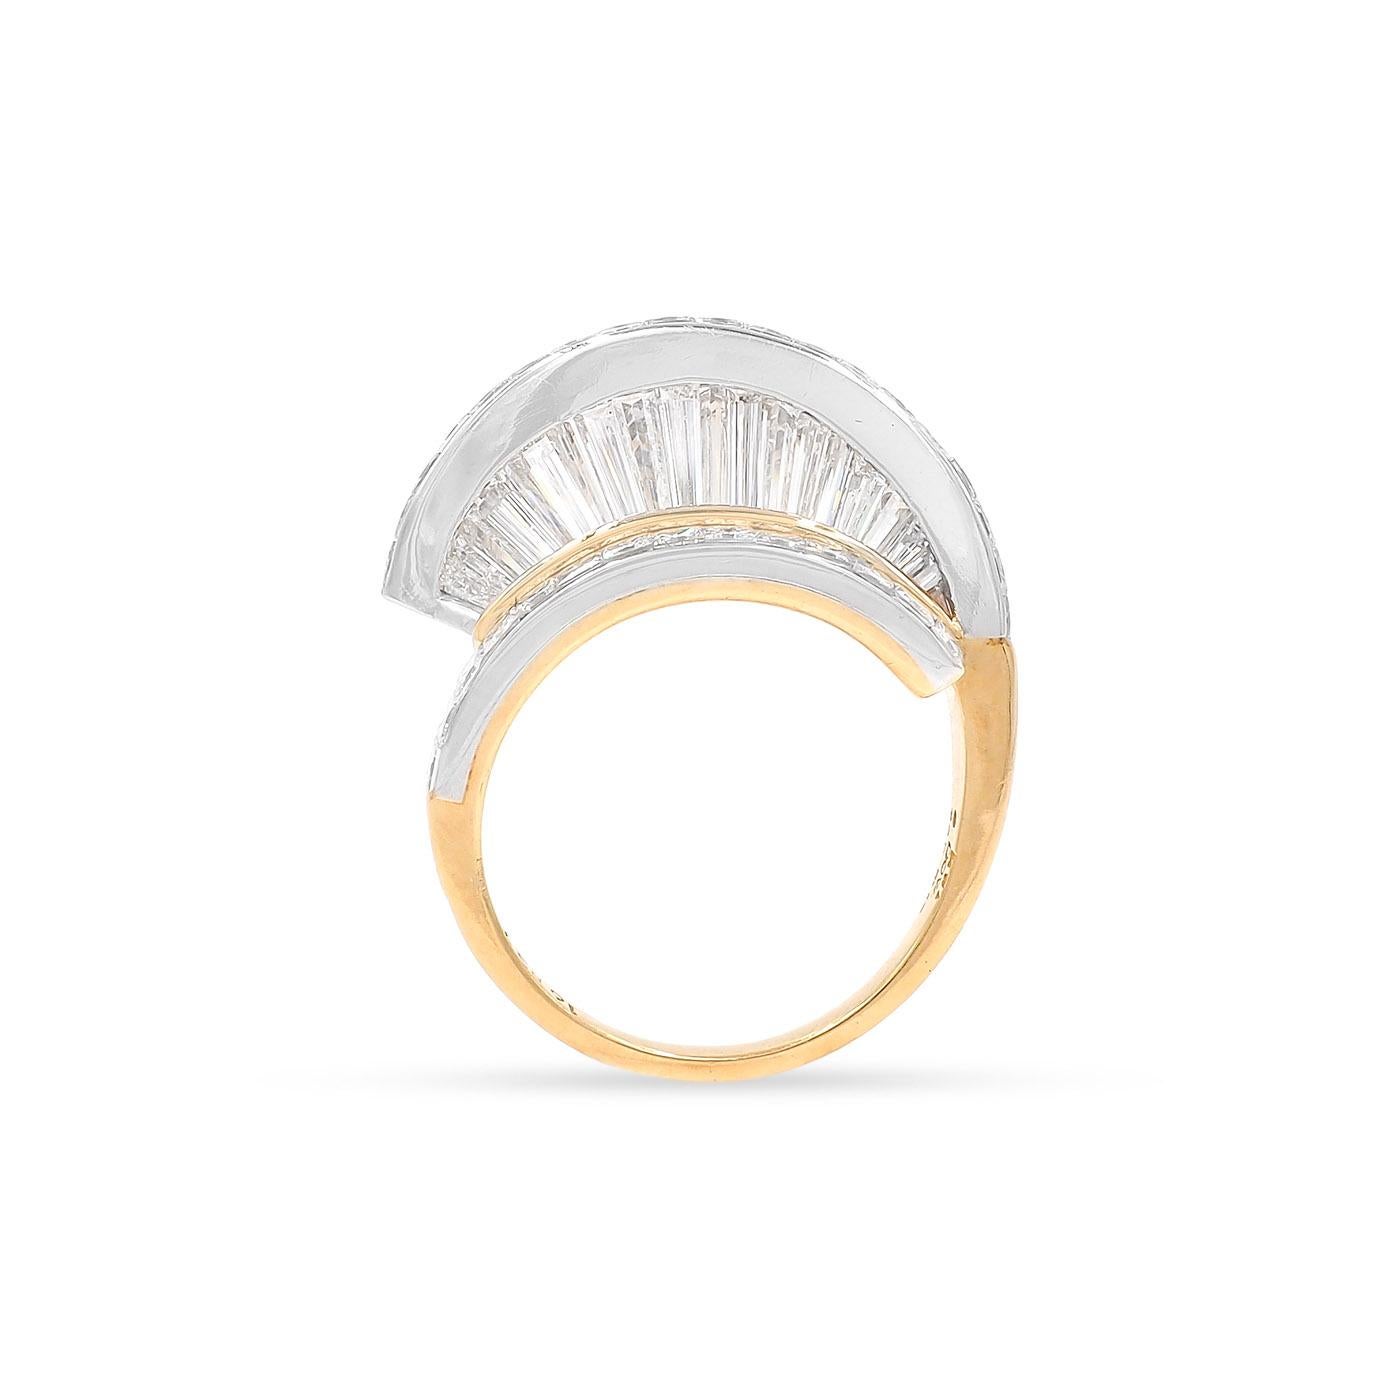 Vintage Baguette Cut & Princess Cut Diamond 'Fan' Ring Set by MWI Eloquence For Sale 2